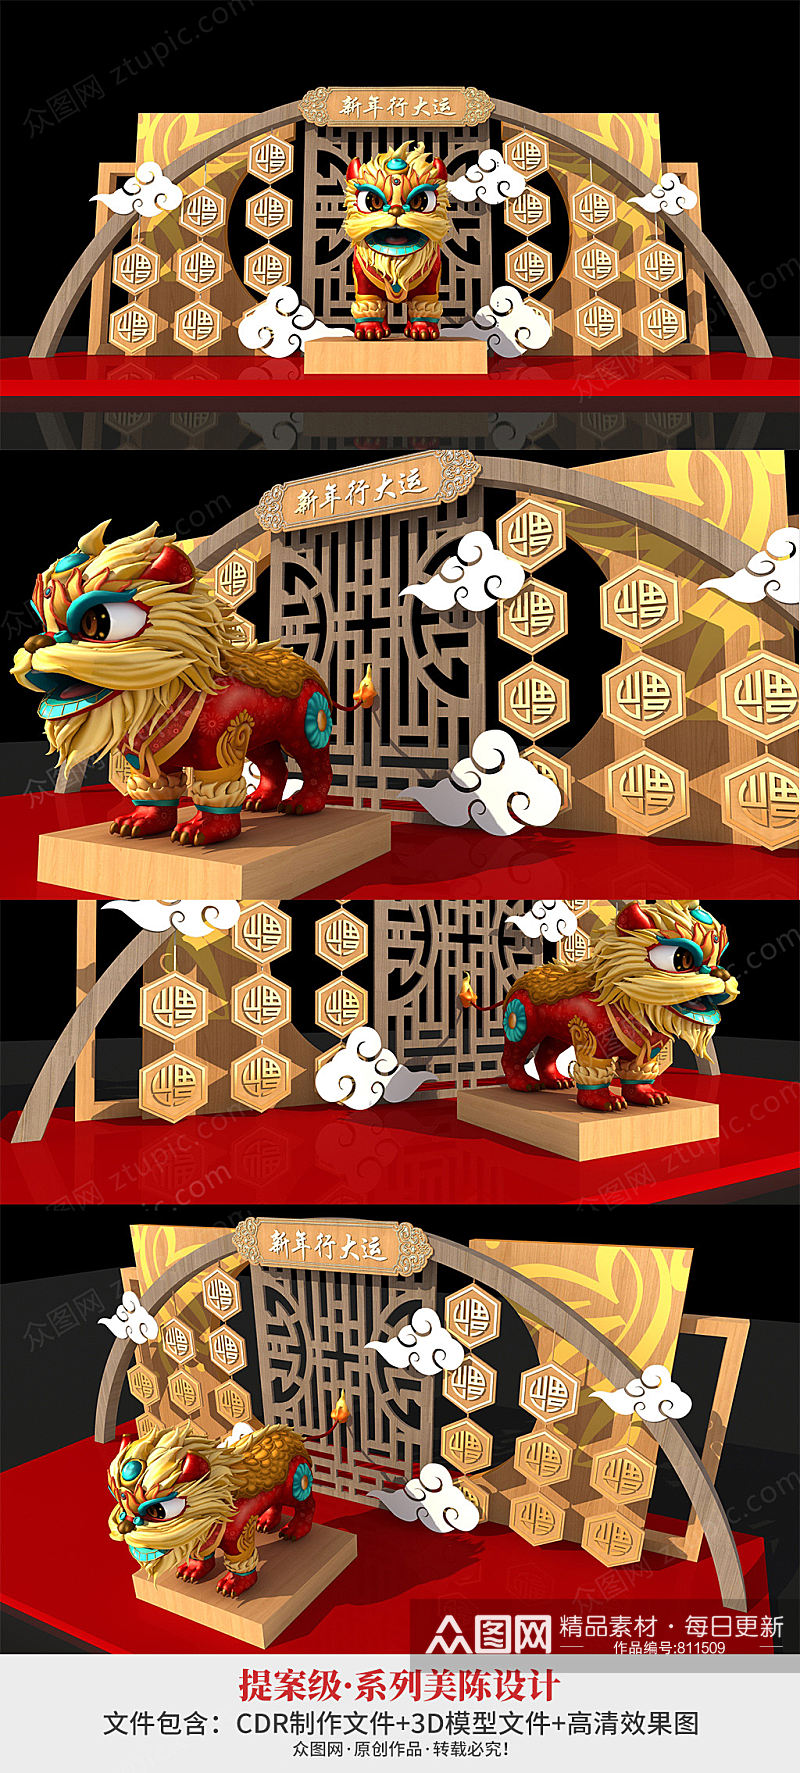 2021牛年舞狮醒狮新年春节美陈设计 新年大厅布置素材